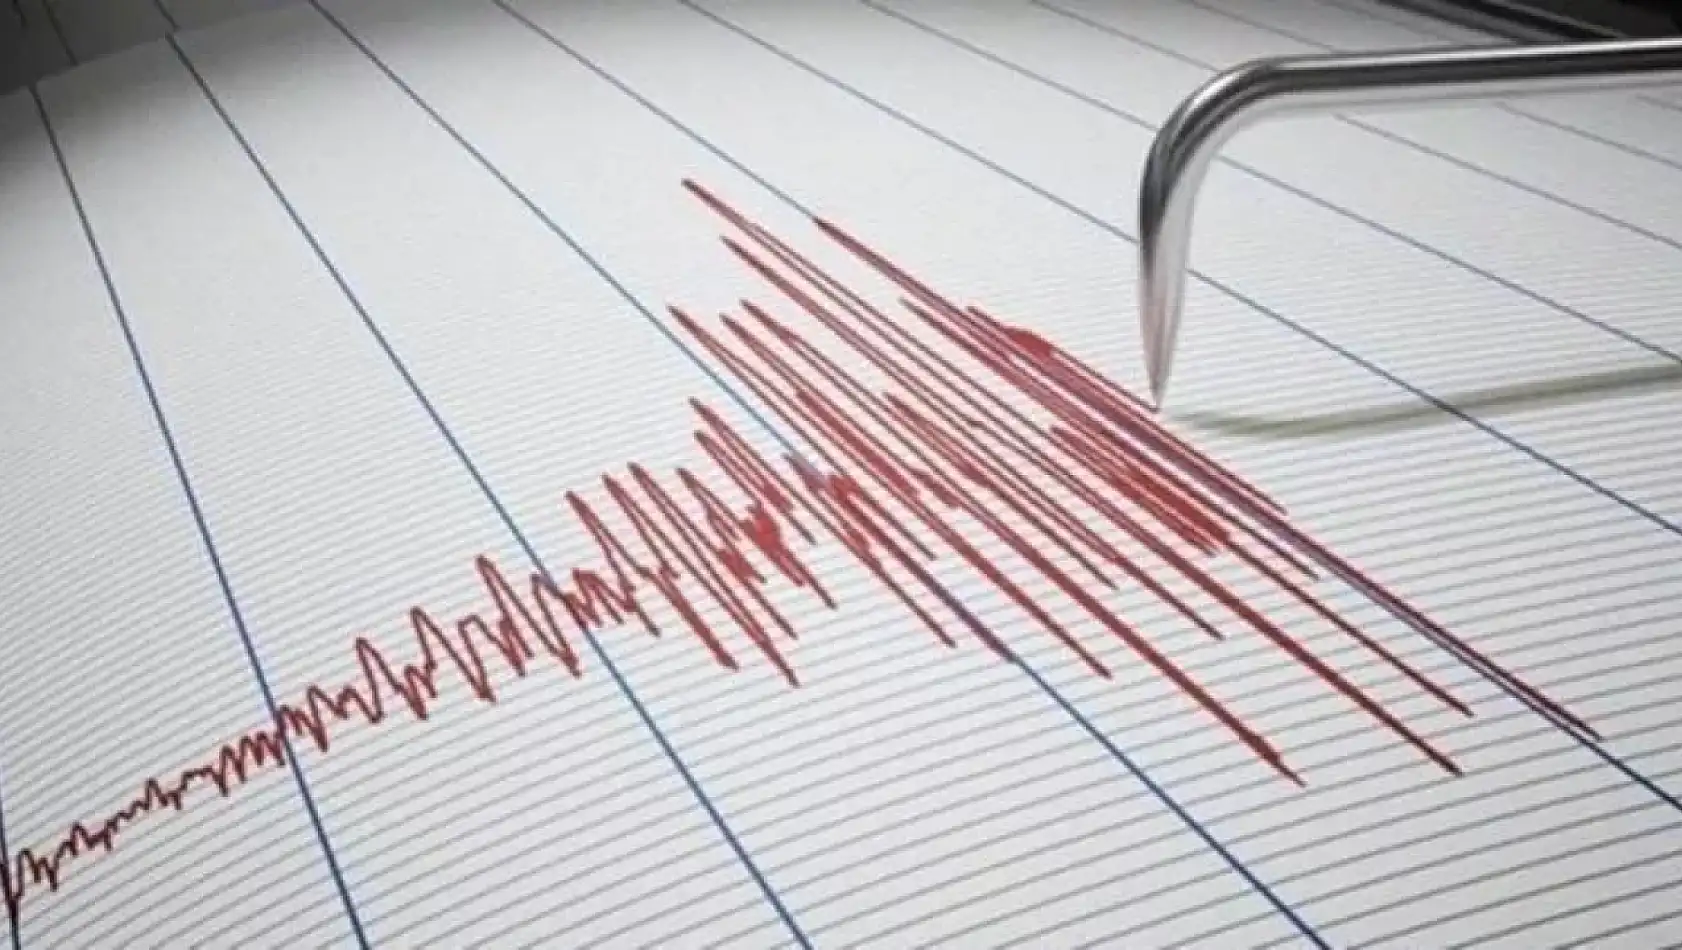 Ege'de deprem: Nerede, kaç şiddetinde deprem oldu? AFAD 9 Temmuz tarihli son depremler